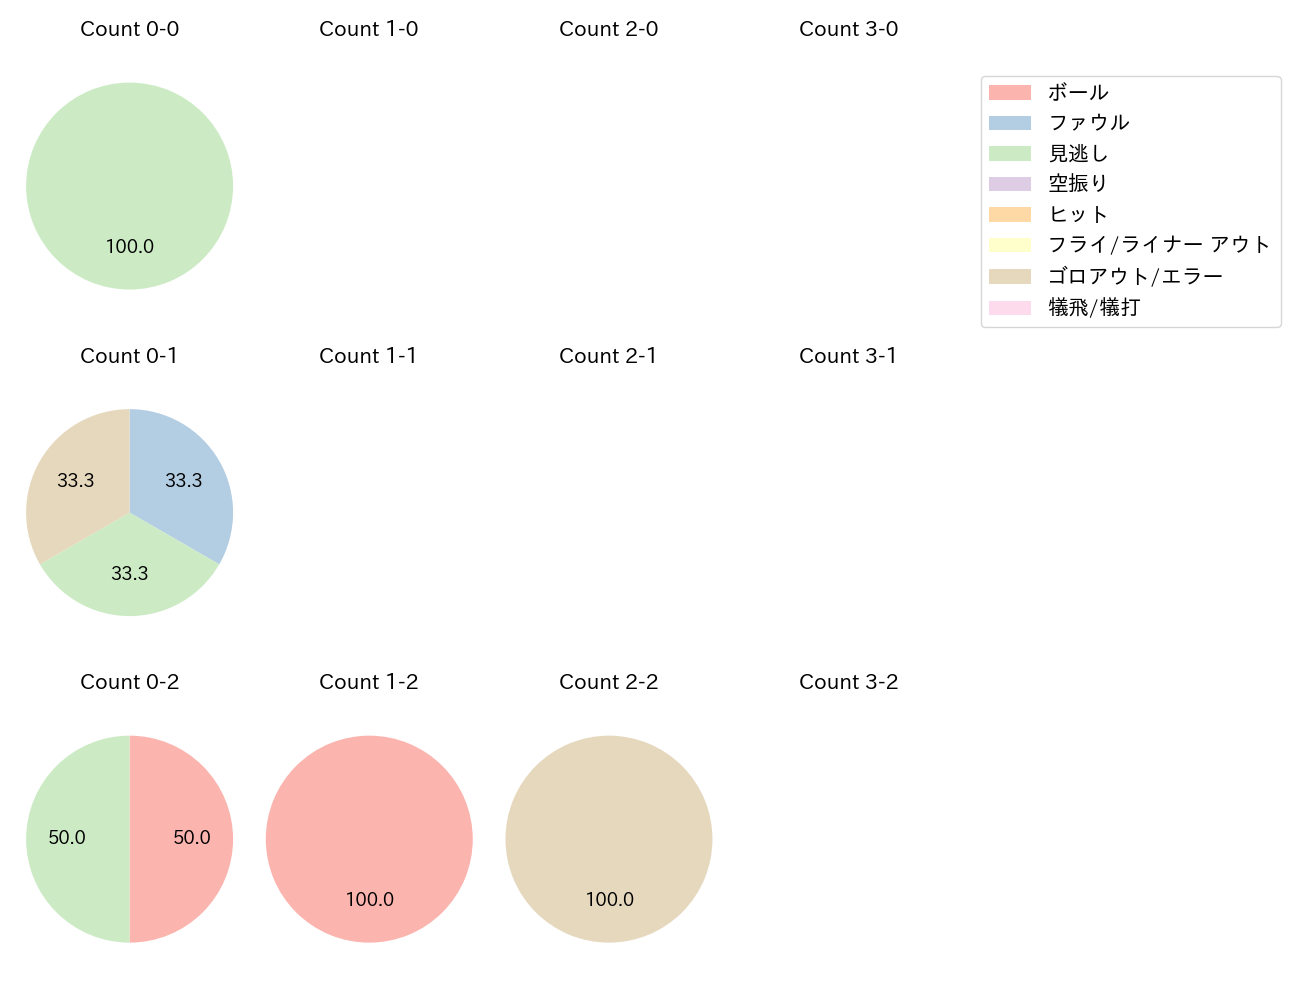 和田 毅の球数分布(2021年6月)